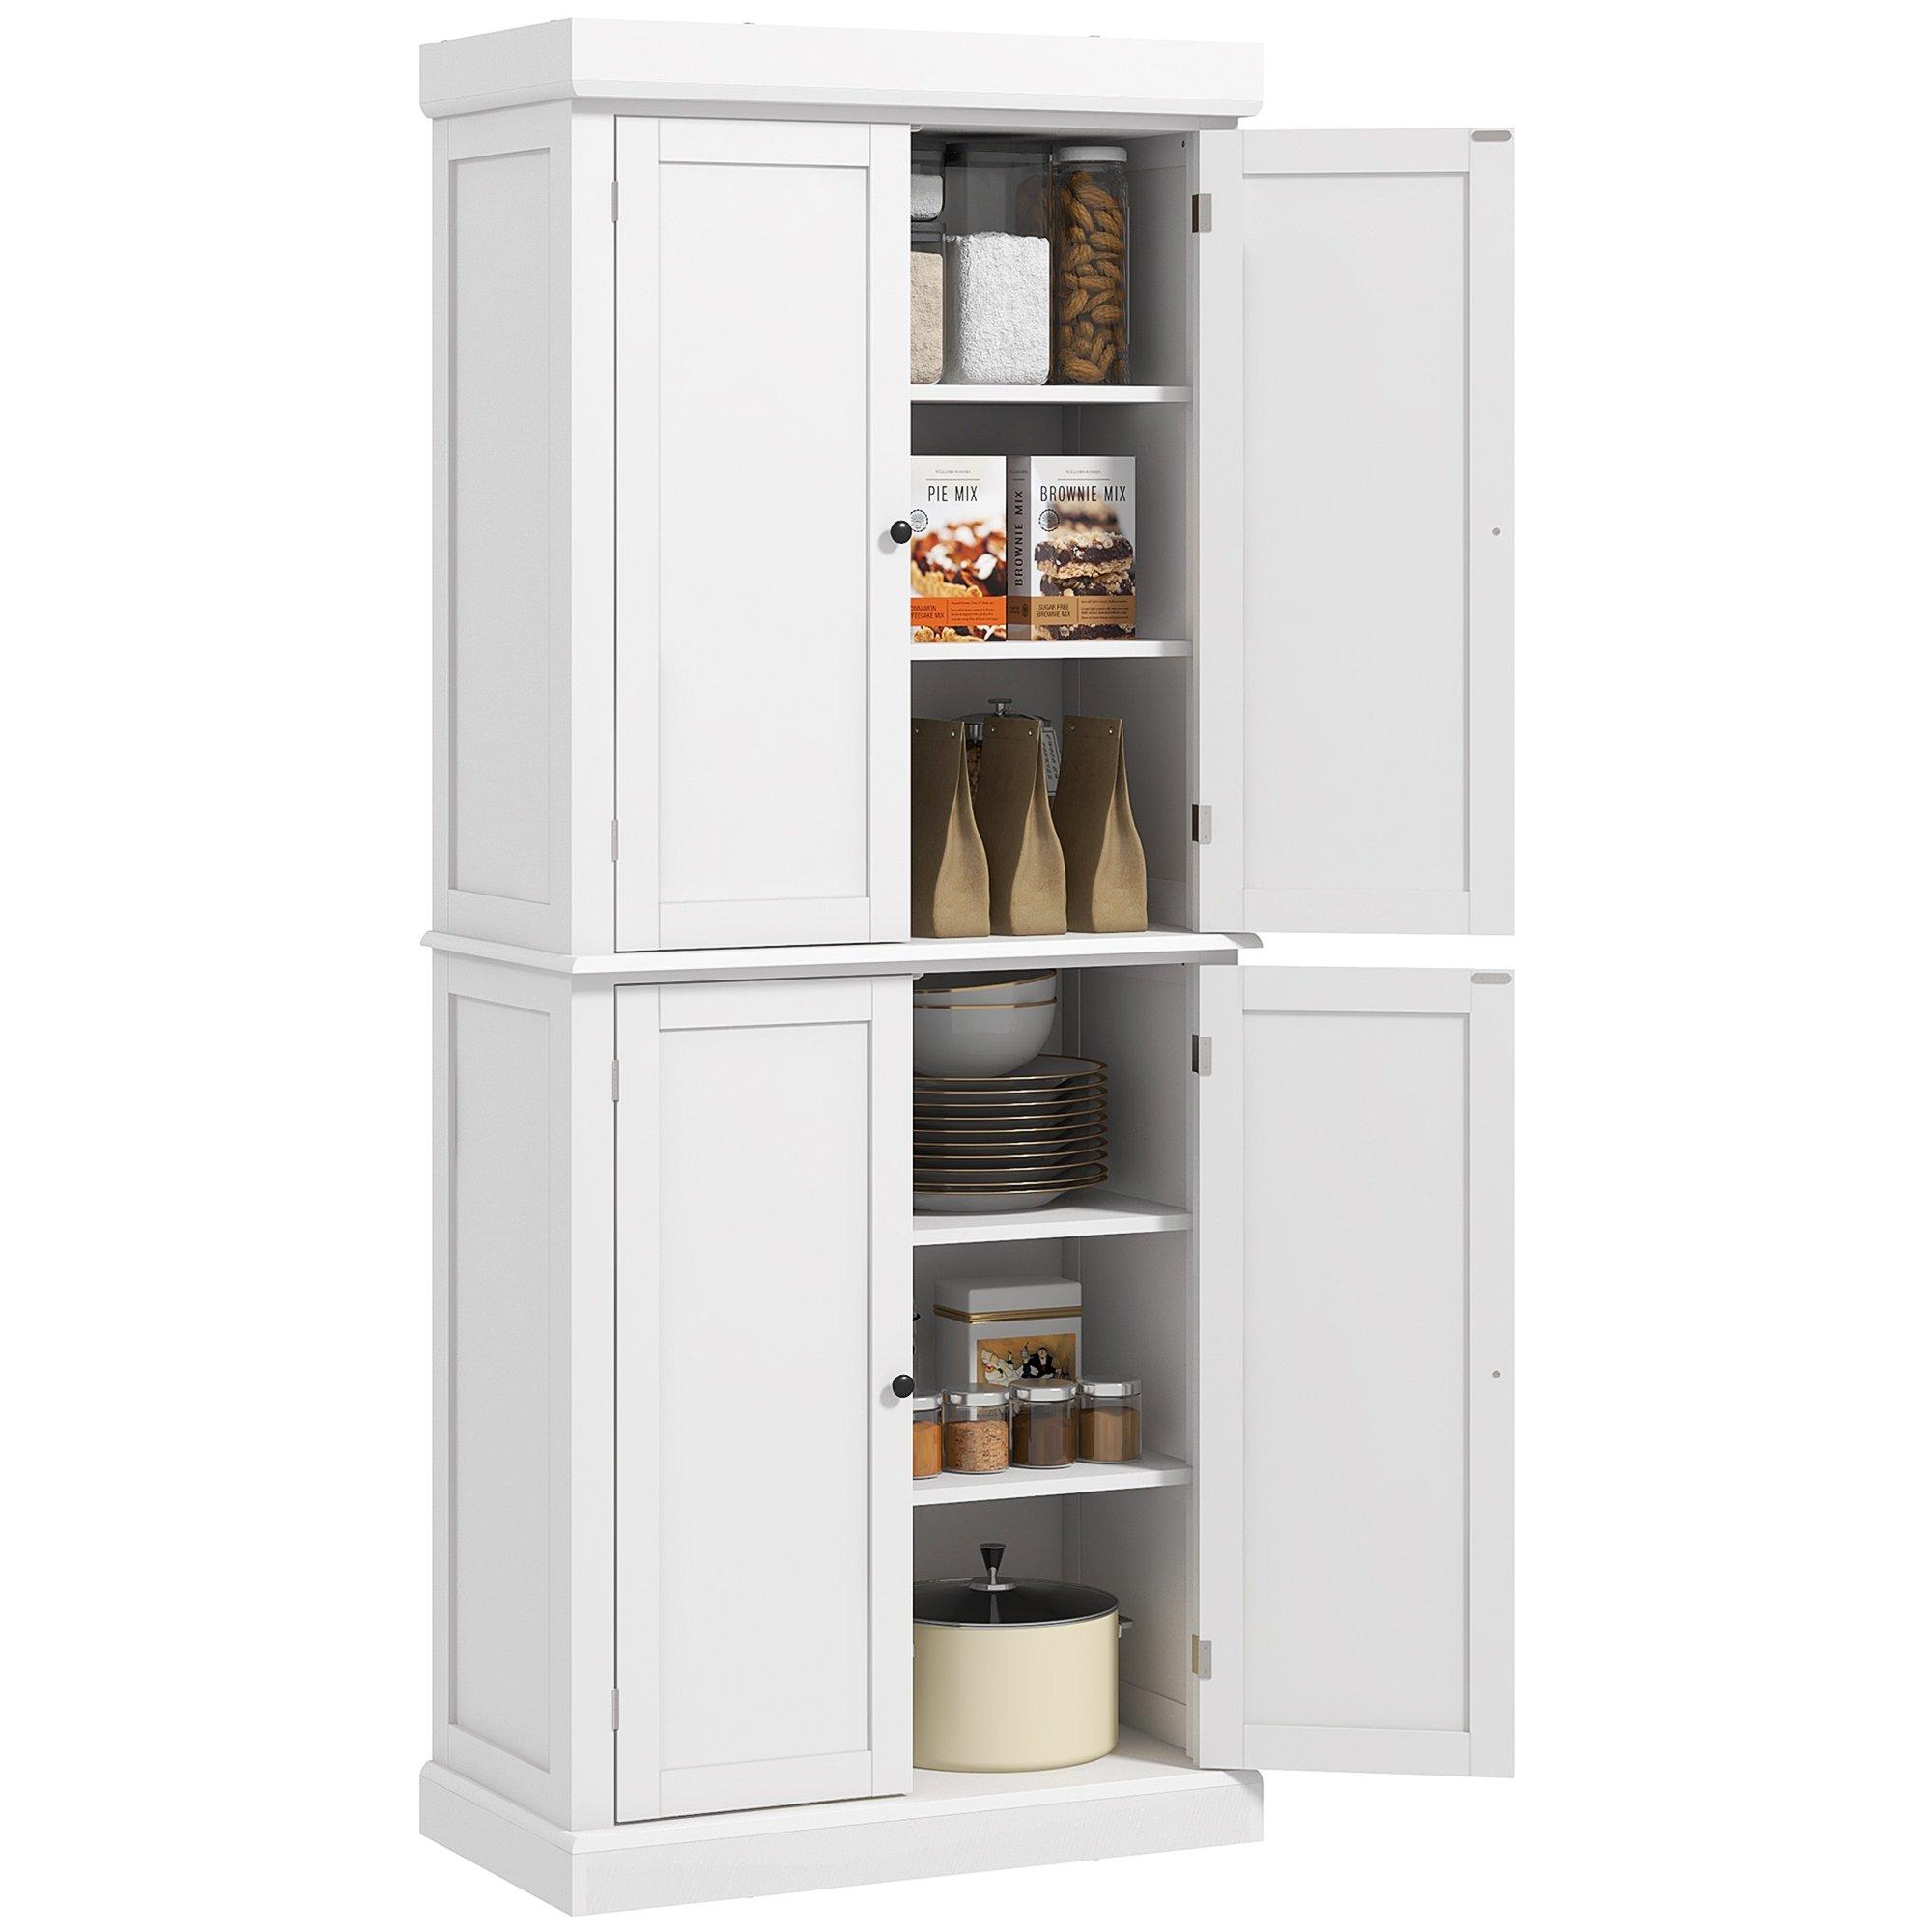 Freestanding Kitchen Cupboard, 6-Tier Cabinet Organizer Adjustable